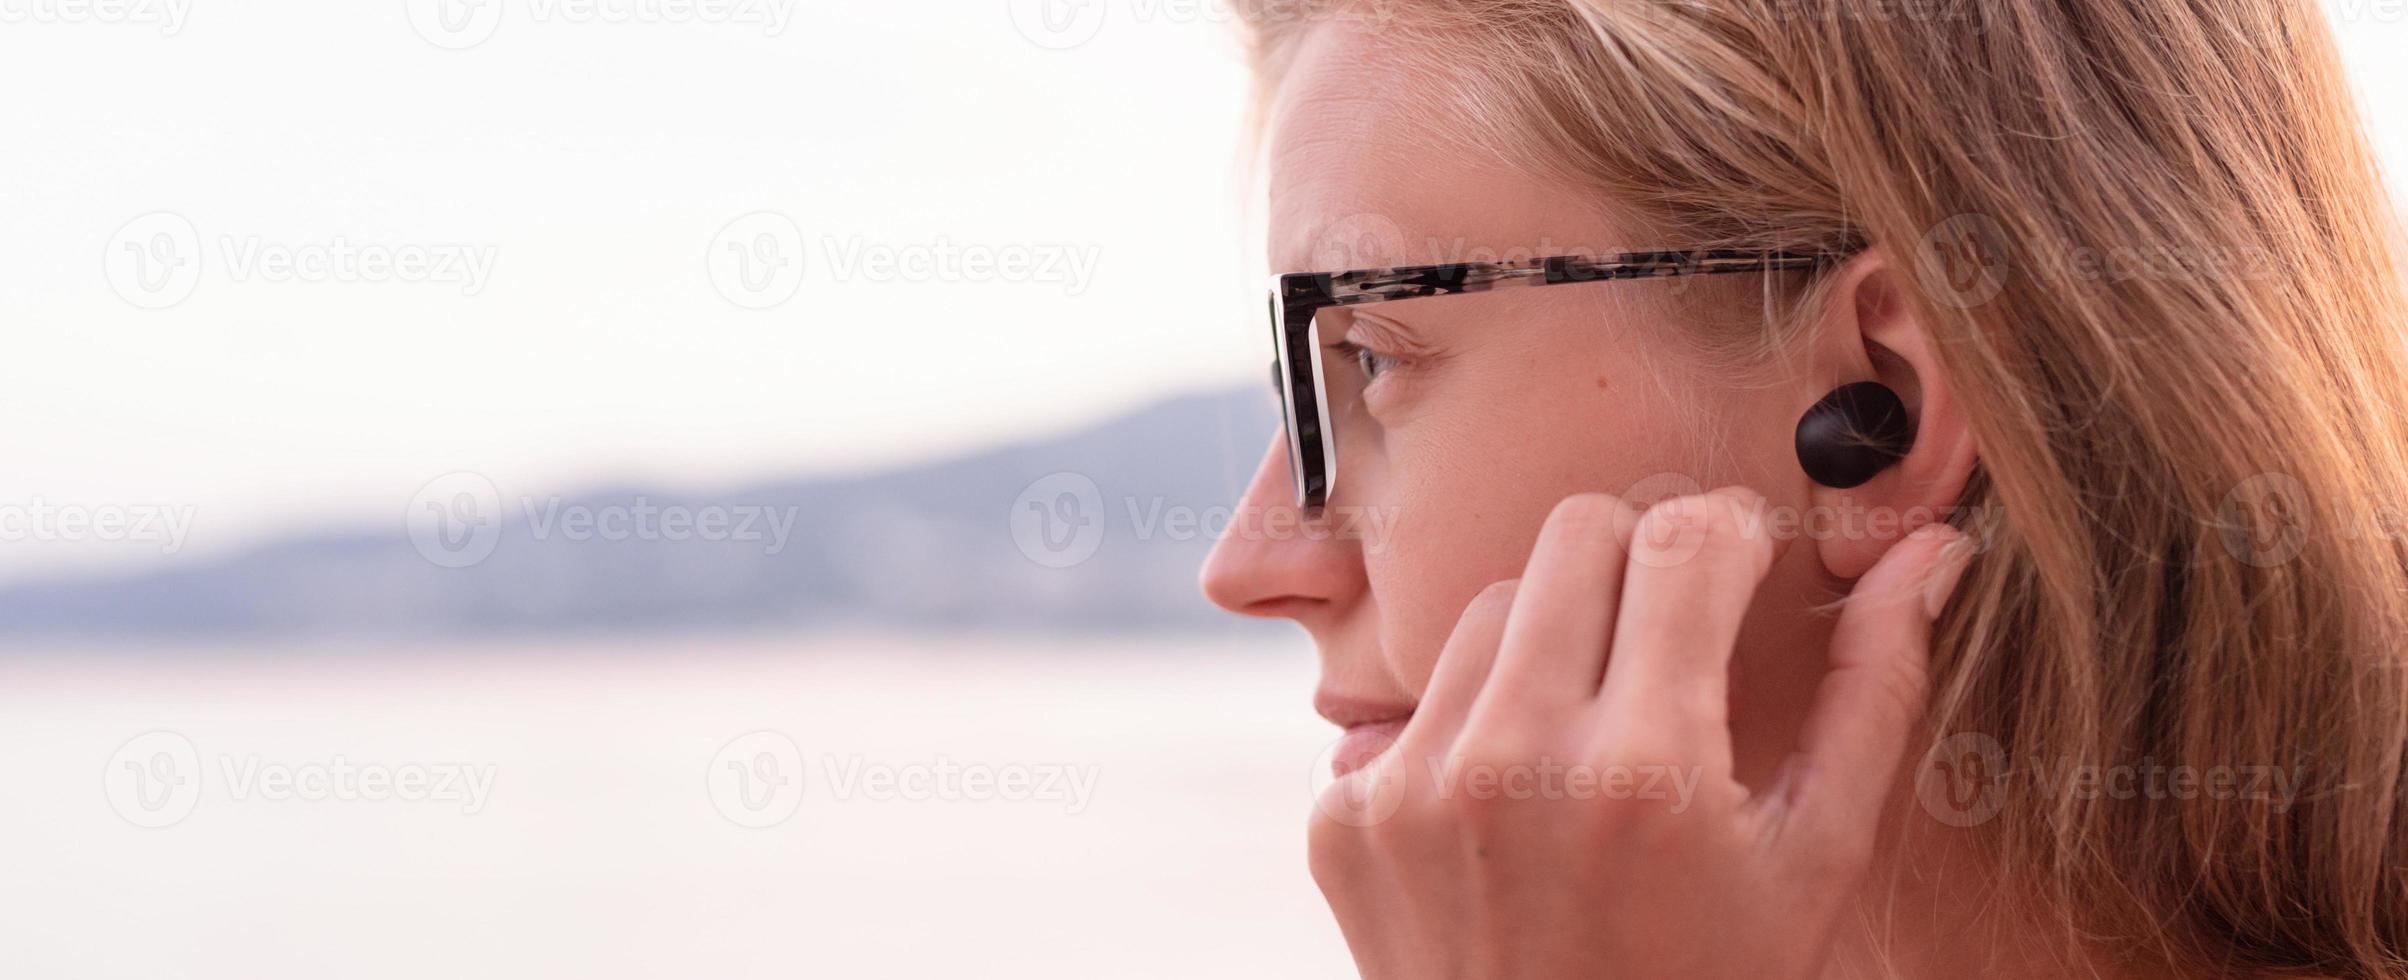 donna che utilizza auricolari wireless, mare sullo sfondo foto